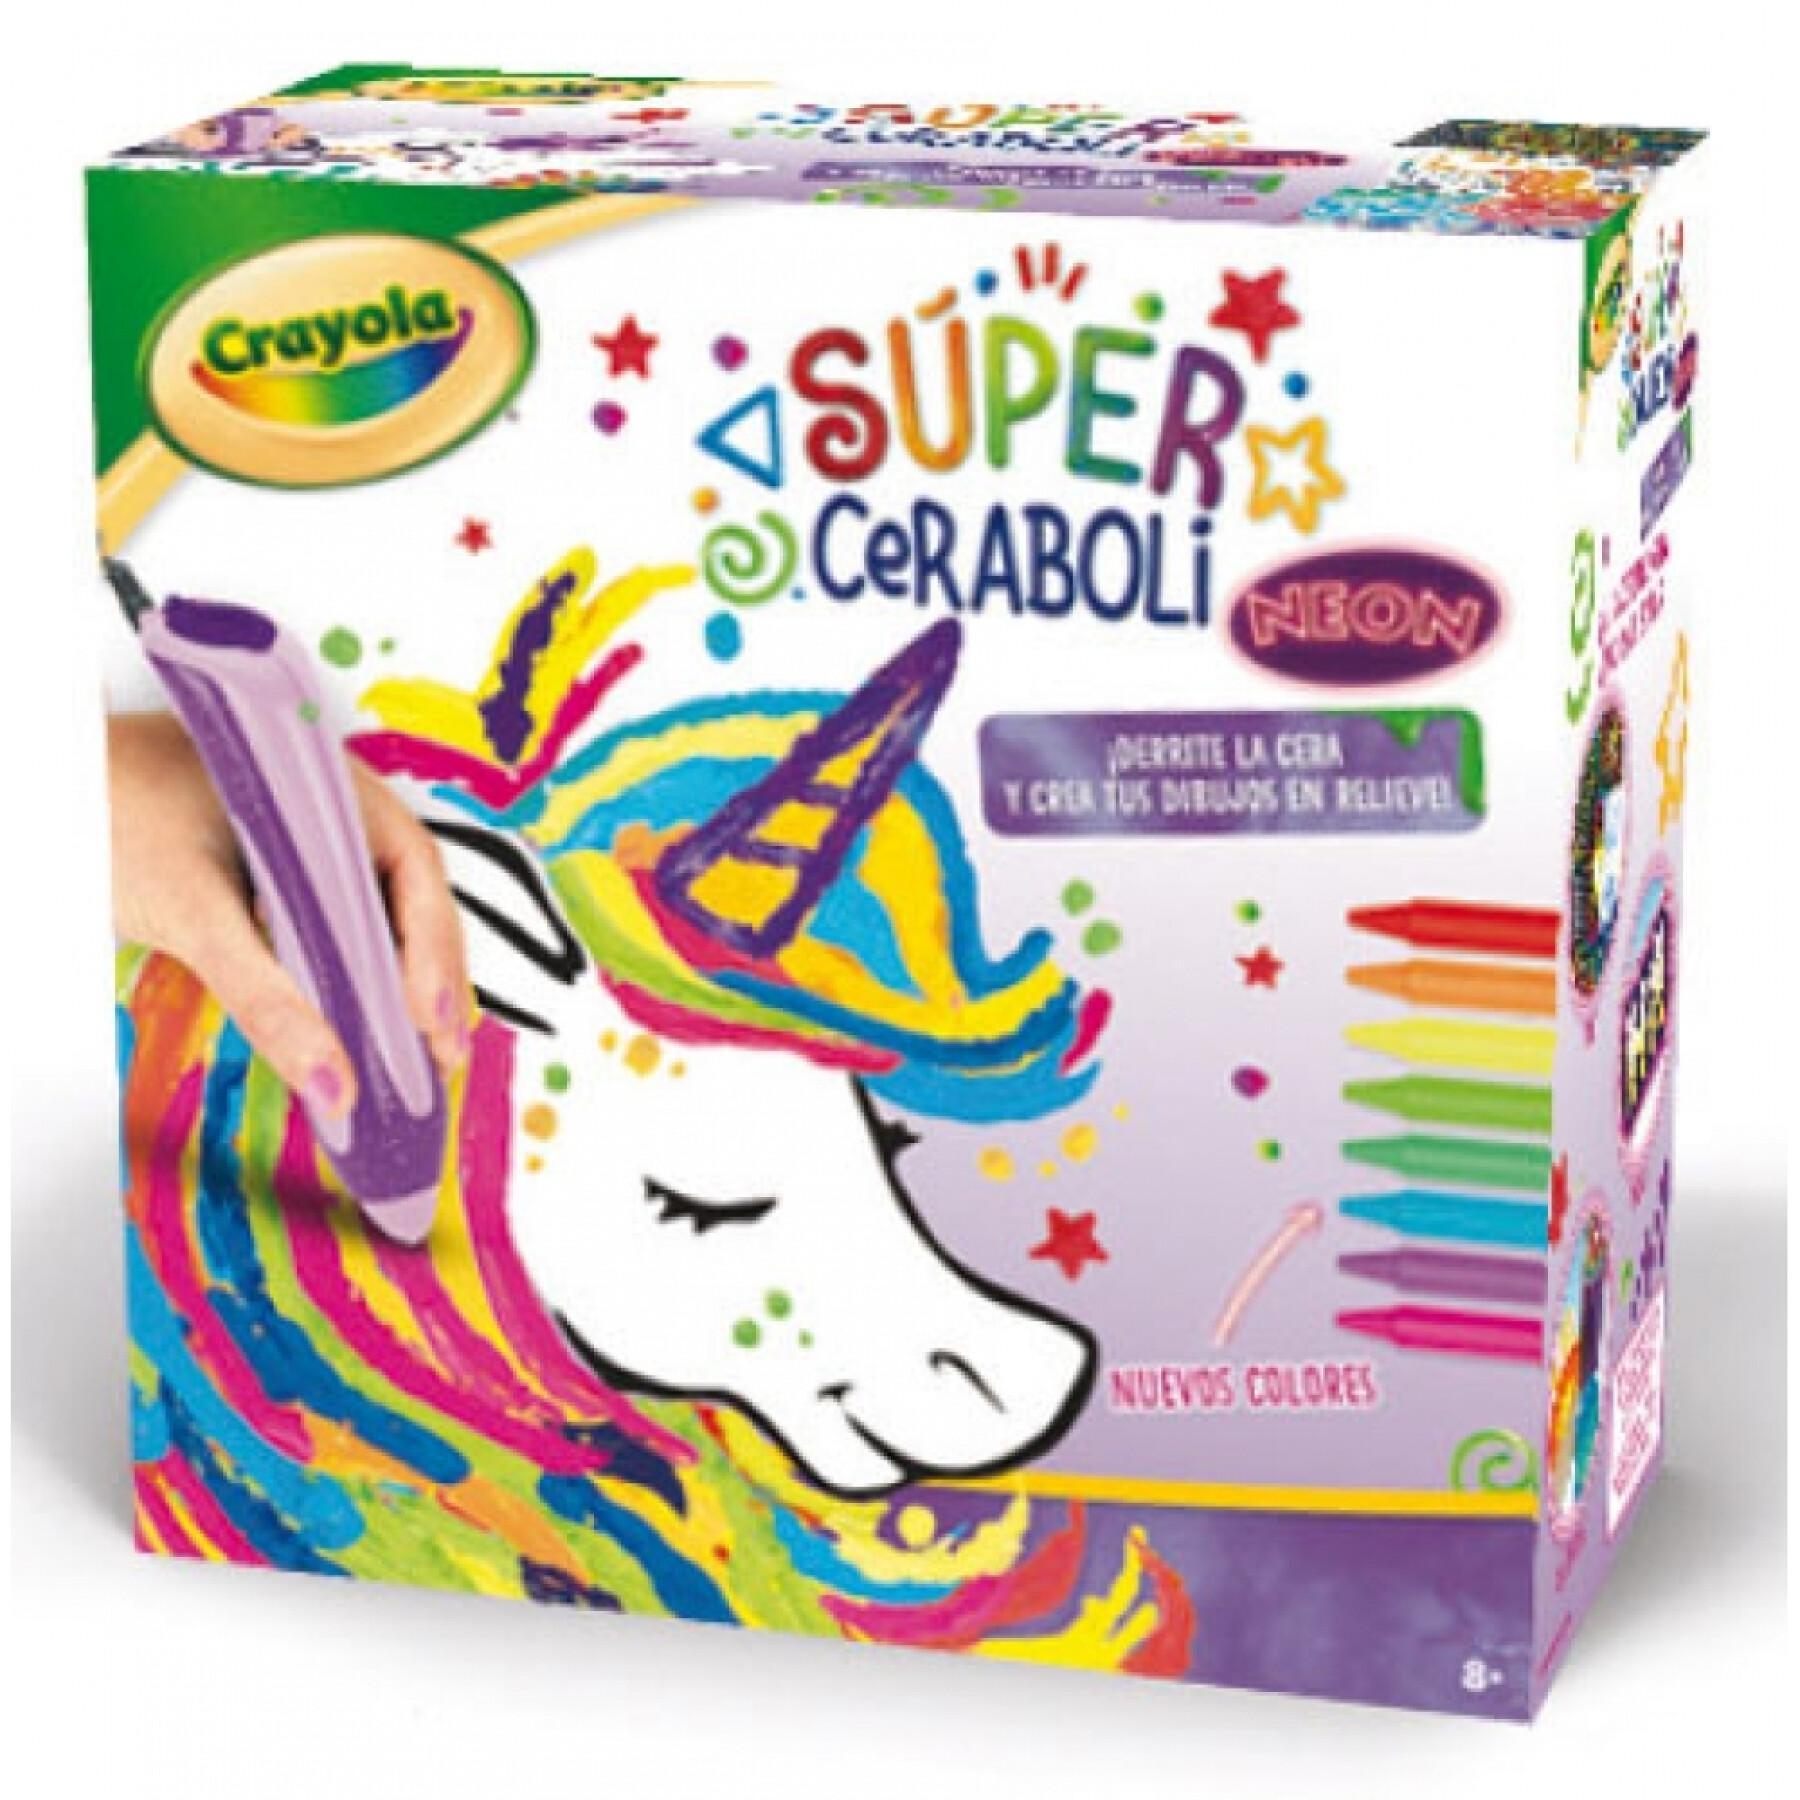 Coloração Crayola Super Ceraboli Néon